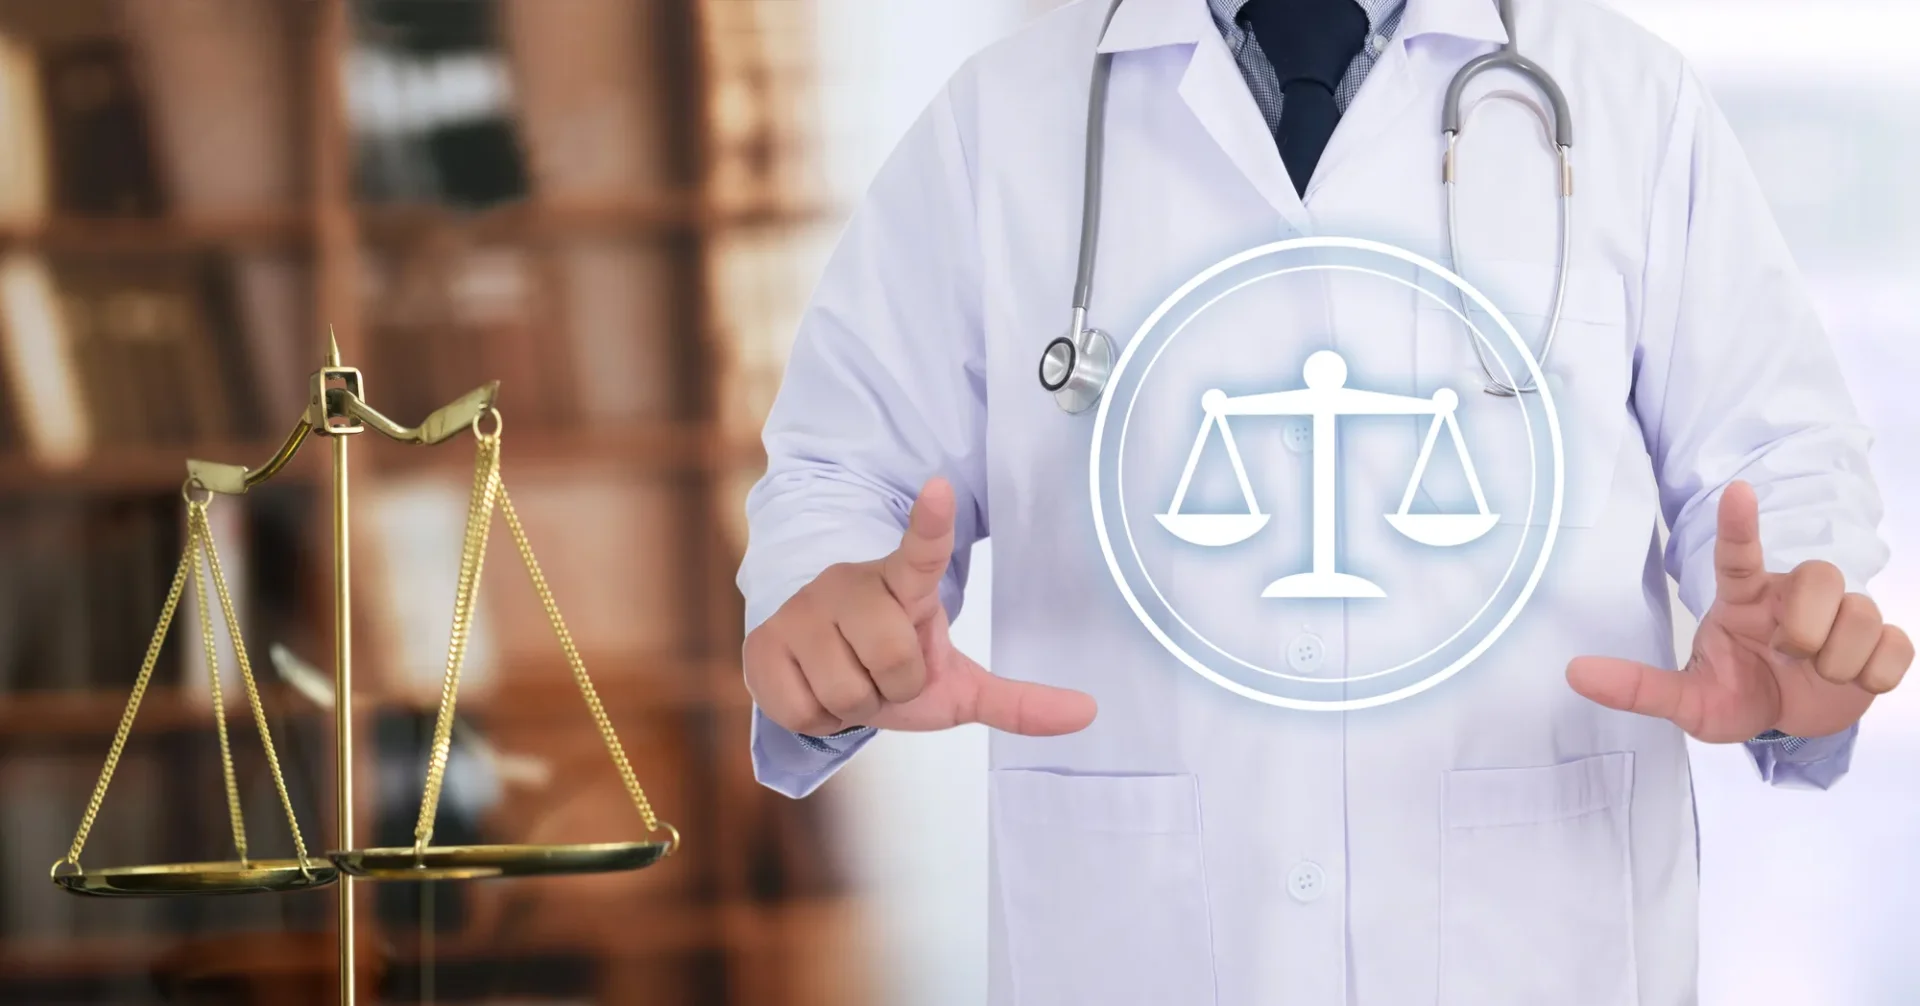 العلاقة بين المريض والطبيب | الحقوق والواجبات